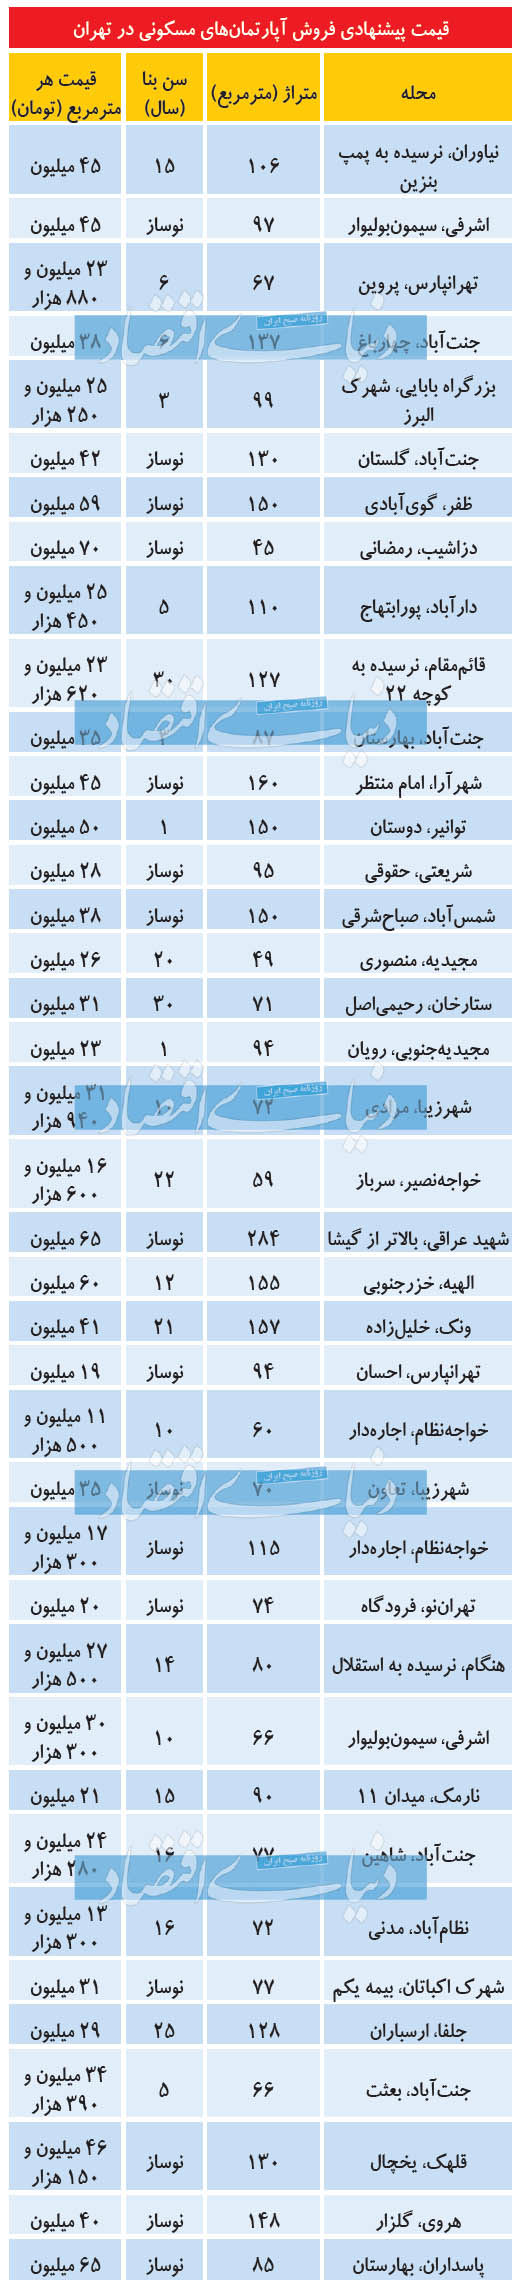 قیمت خرید خانه و نرخ اجاره مسکن در تهران امروز شنبه 15 شهریور 99